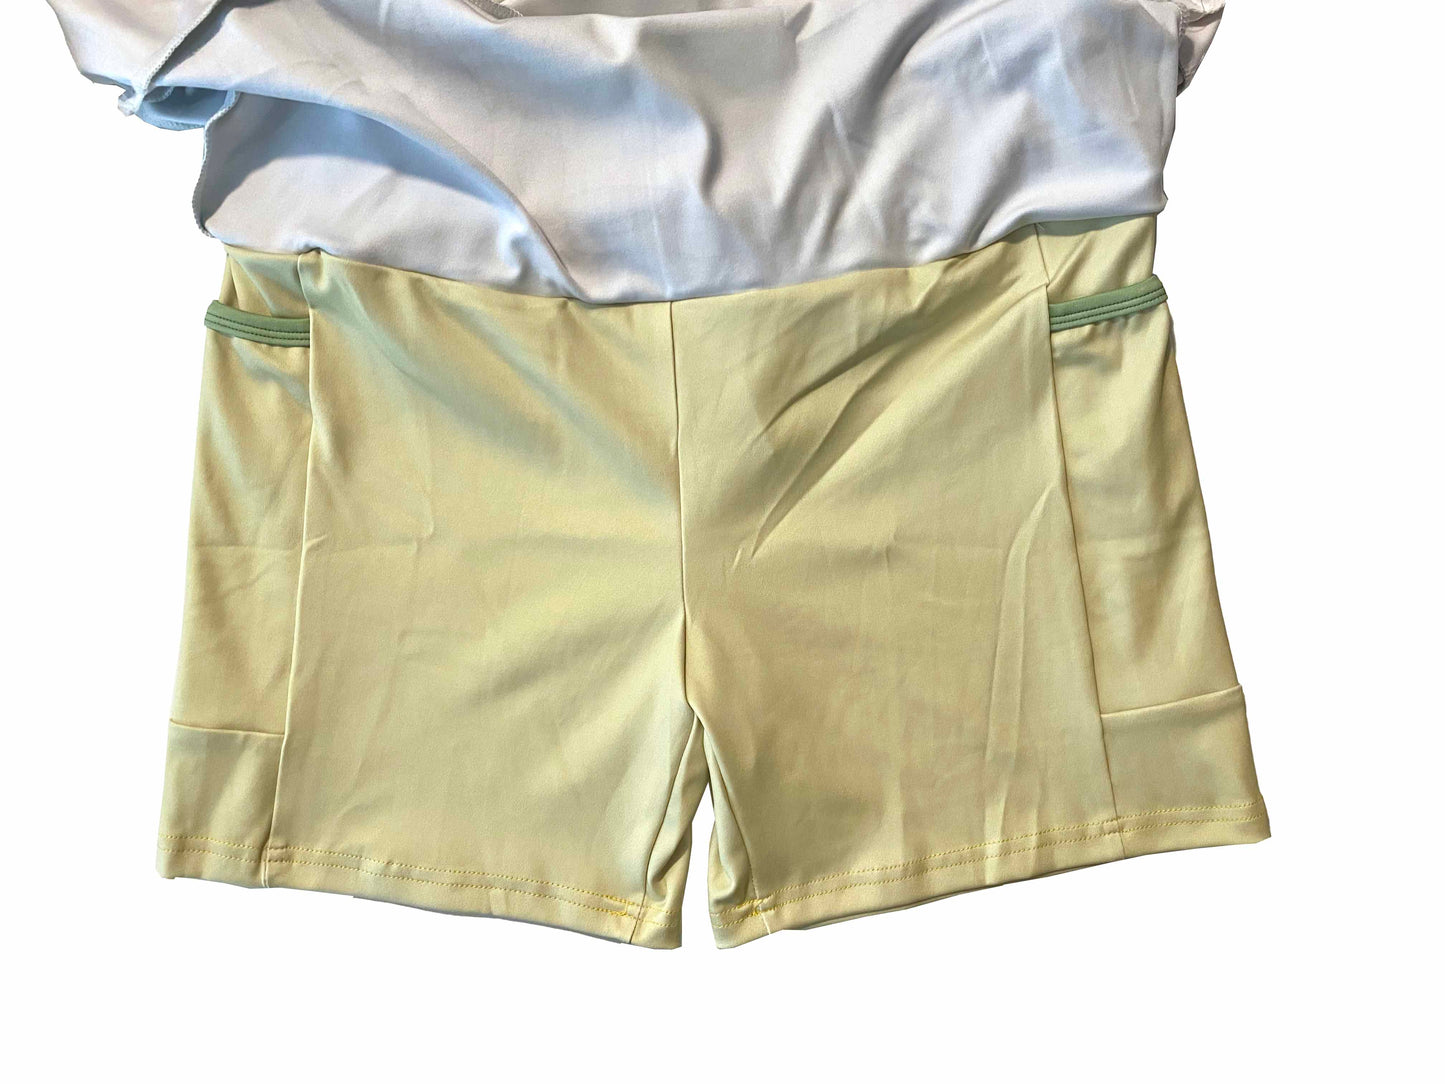 Tiana Inspired Sport Skirt